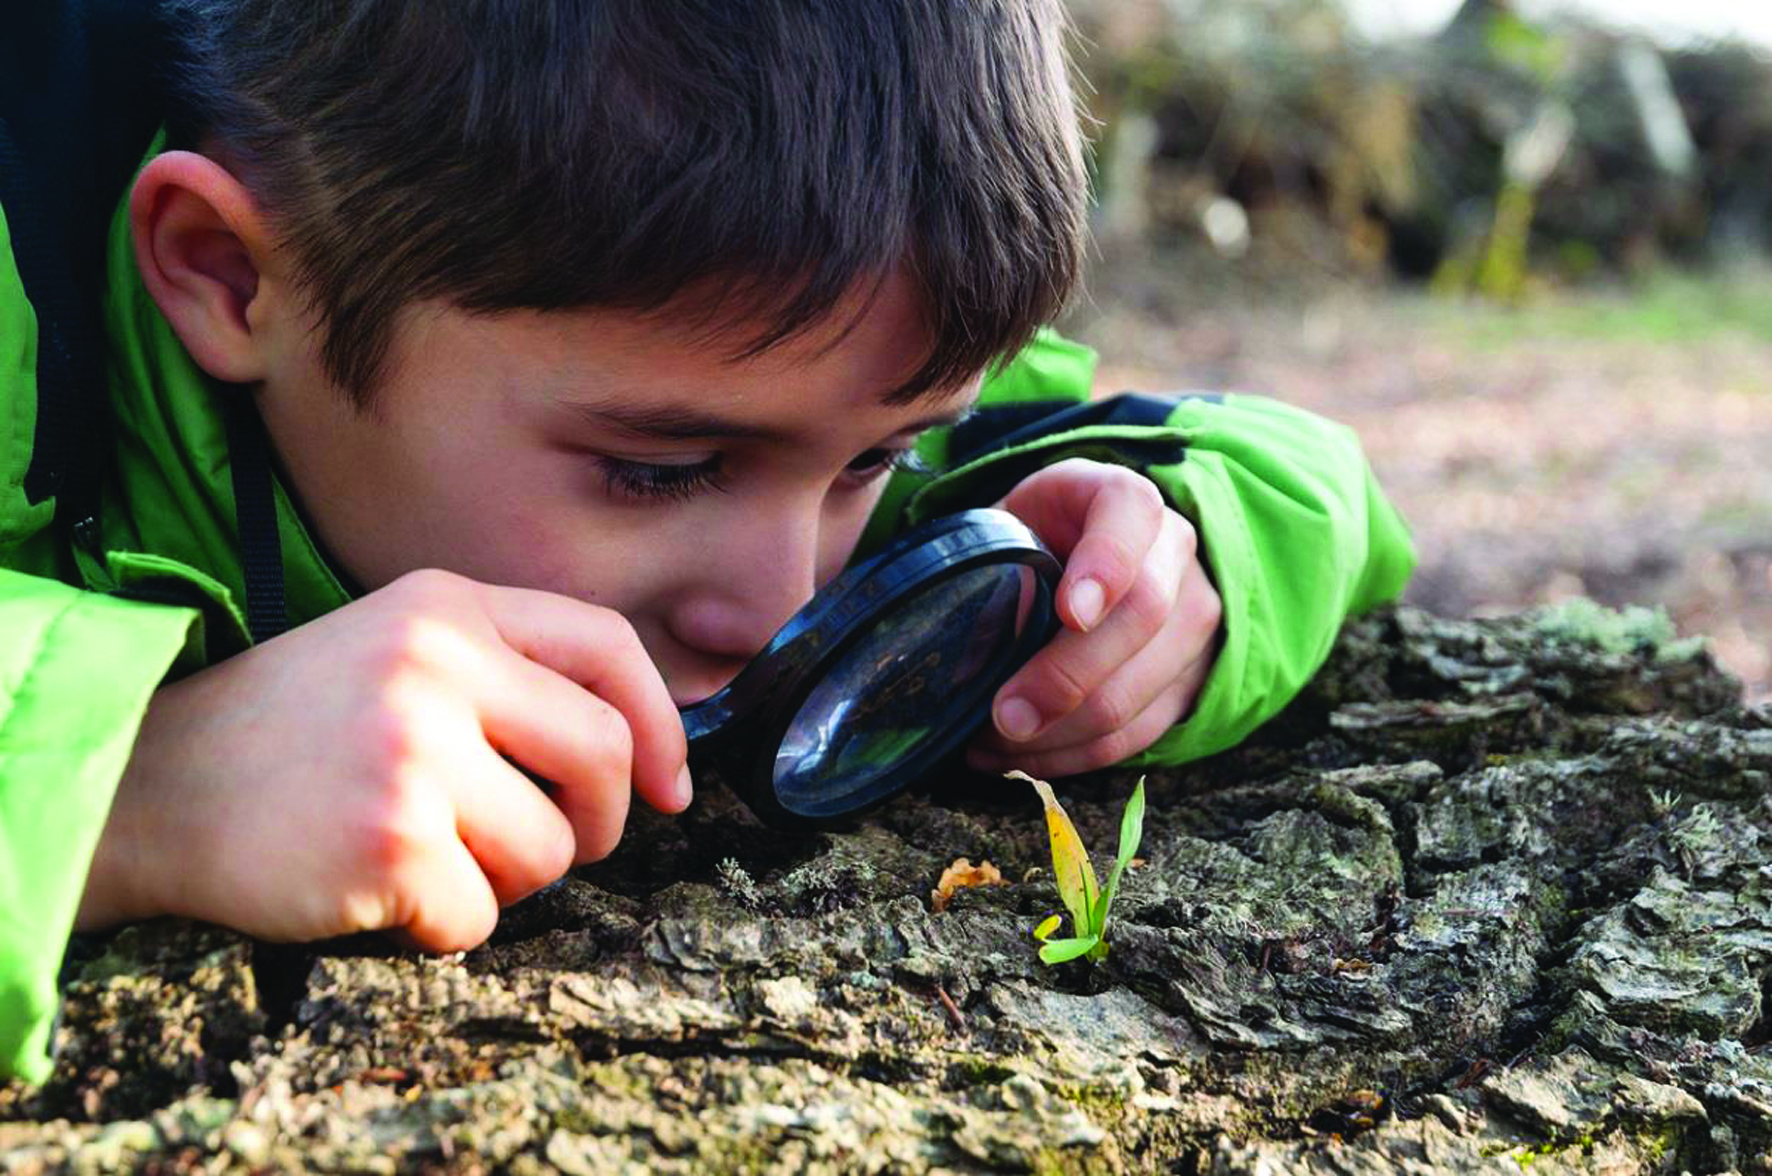 Житейские наблюдения показывают. Дети изучают природу. Ребенок наблюдает. Ддетти наблюдают за природой. Изучение природы.